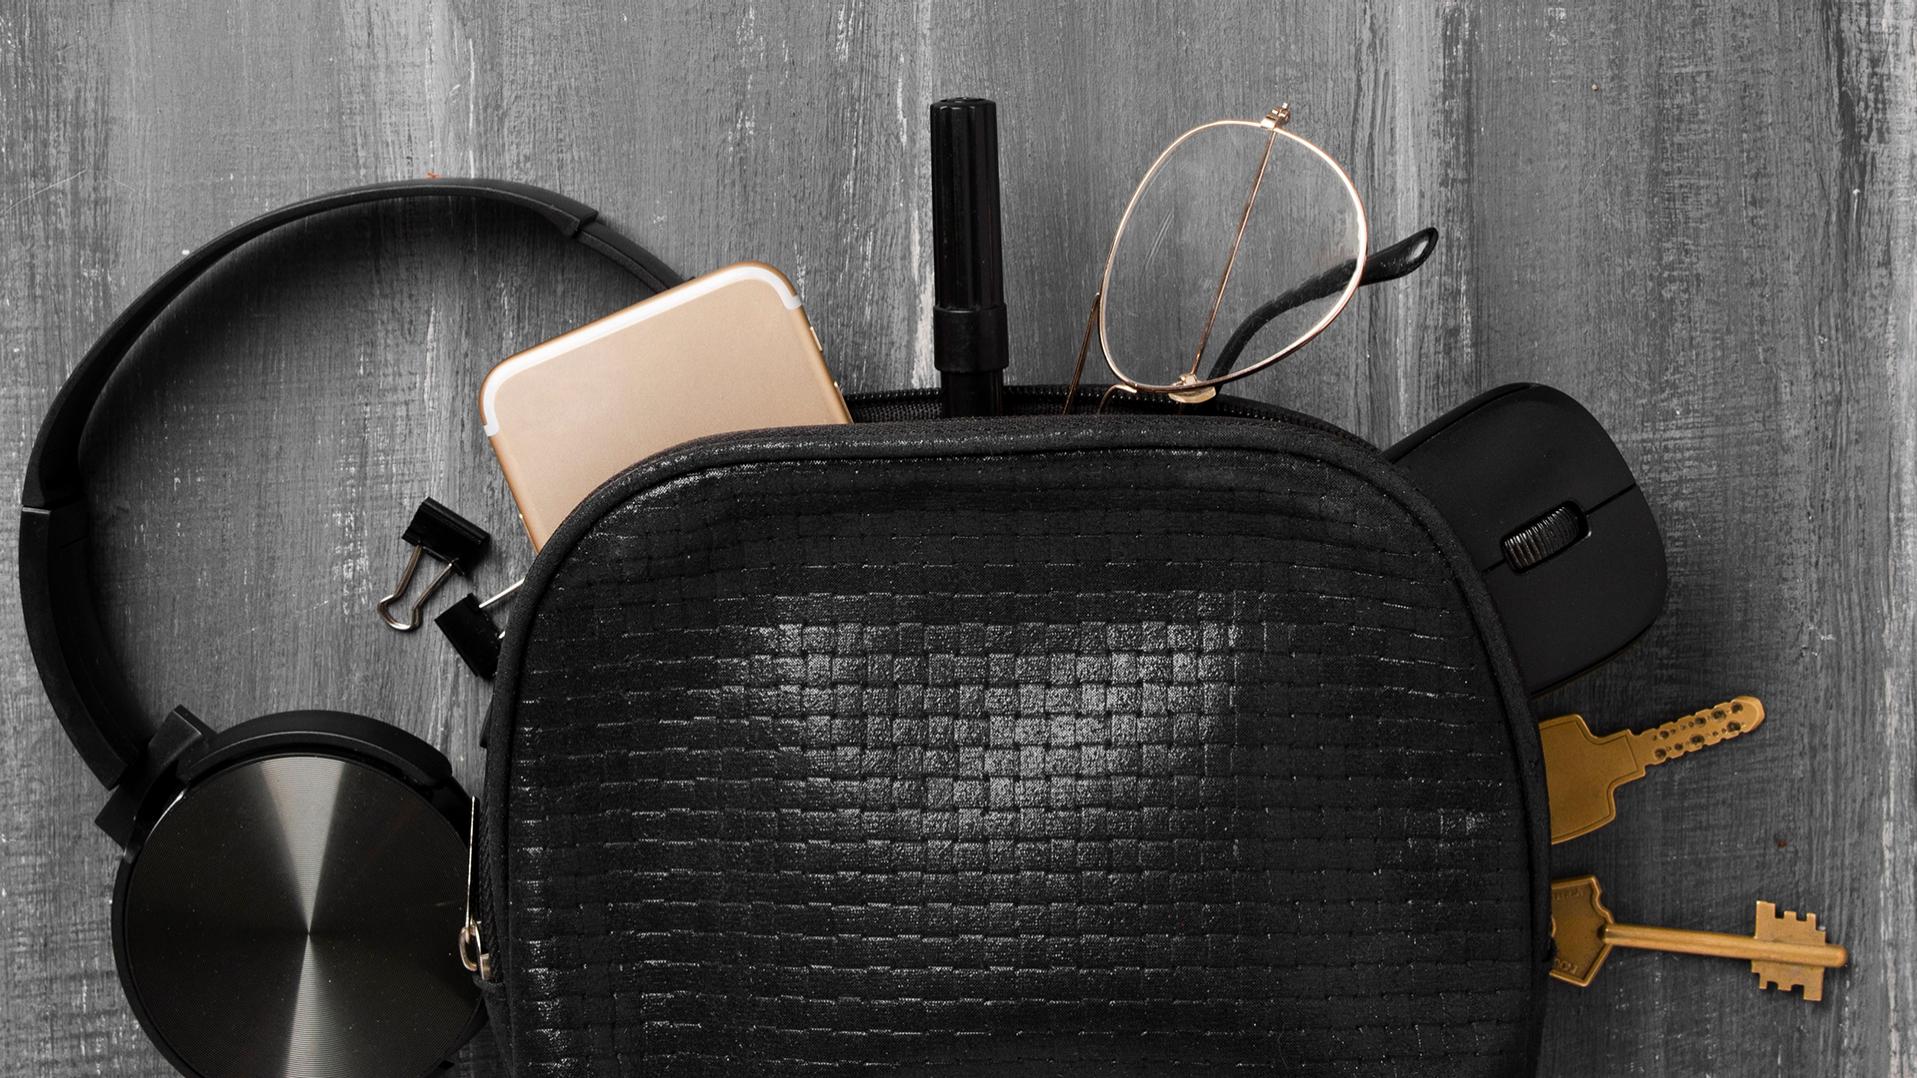 耳機、手機、鑰匙、回形針、筆、電腦滑鼠、配備 DuraVision 鍍膜的蔡司眼鏡從一個黑色小包裡面滑了出來，一半散落在灰色的地板上。